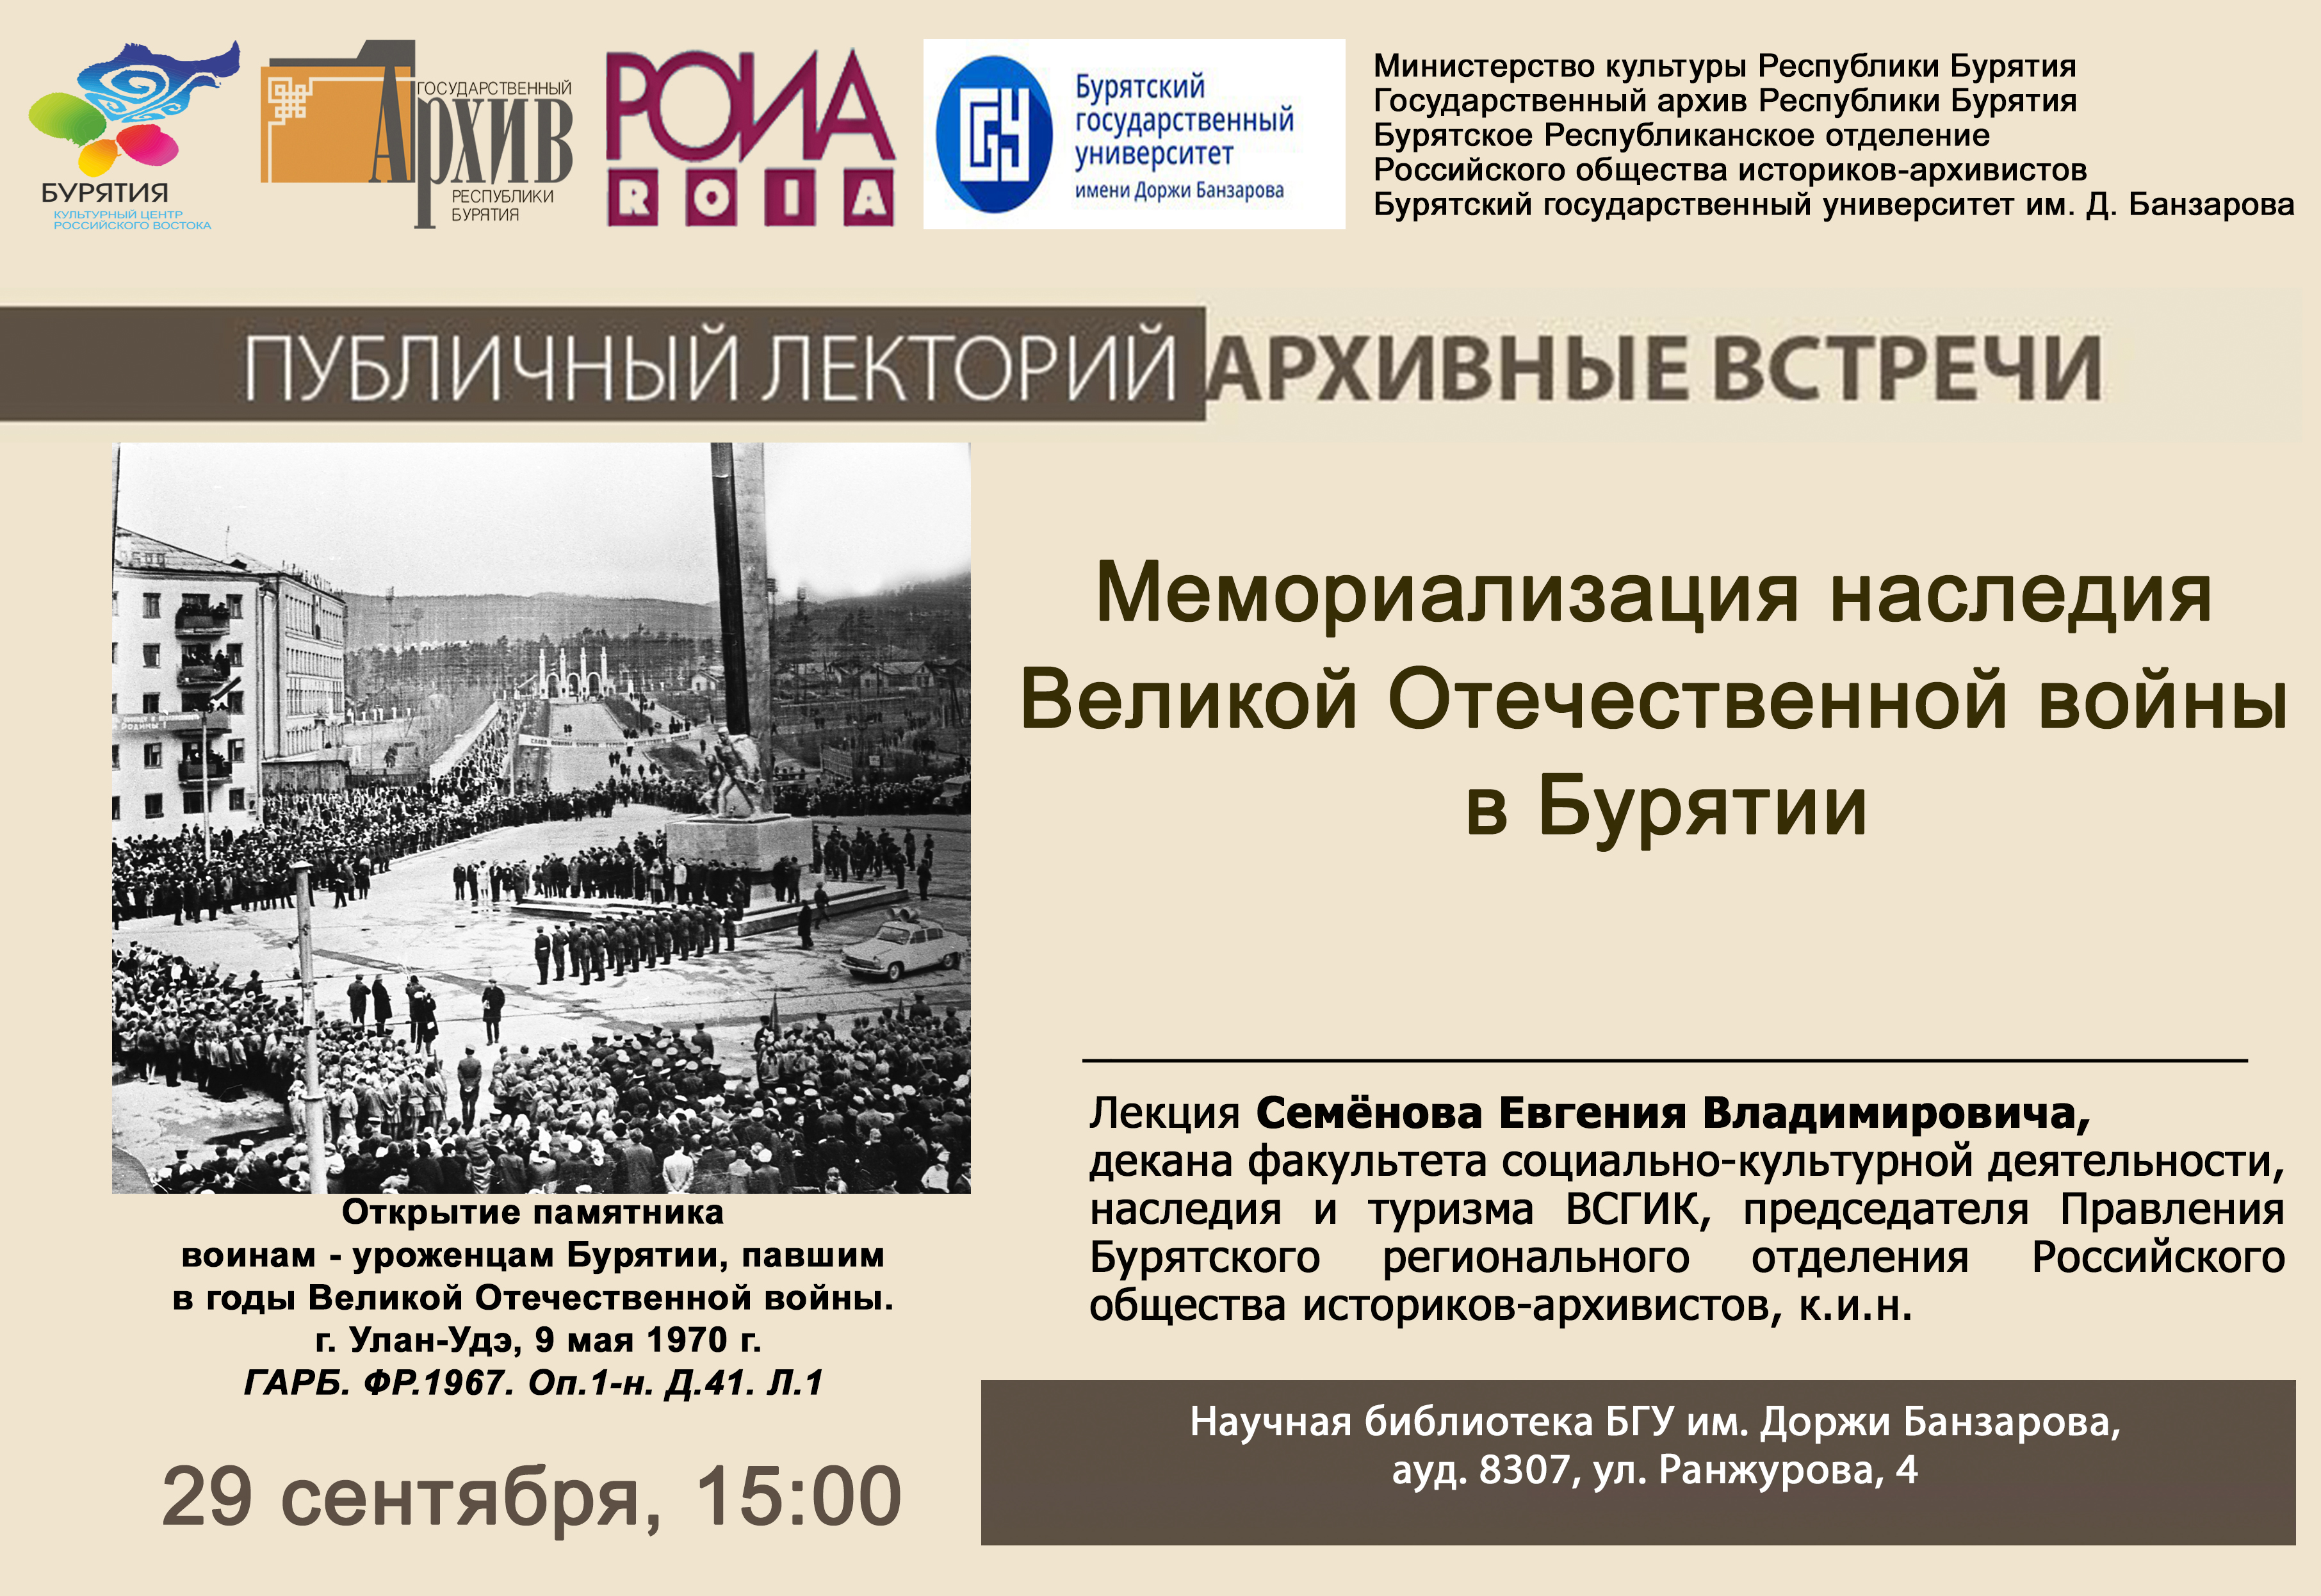 Государственный архив Республики Бурятия приглашает на очередной публичный лекторий «Архивные встречи»